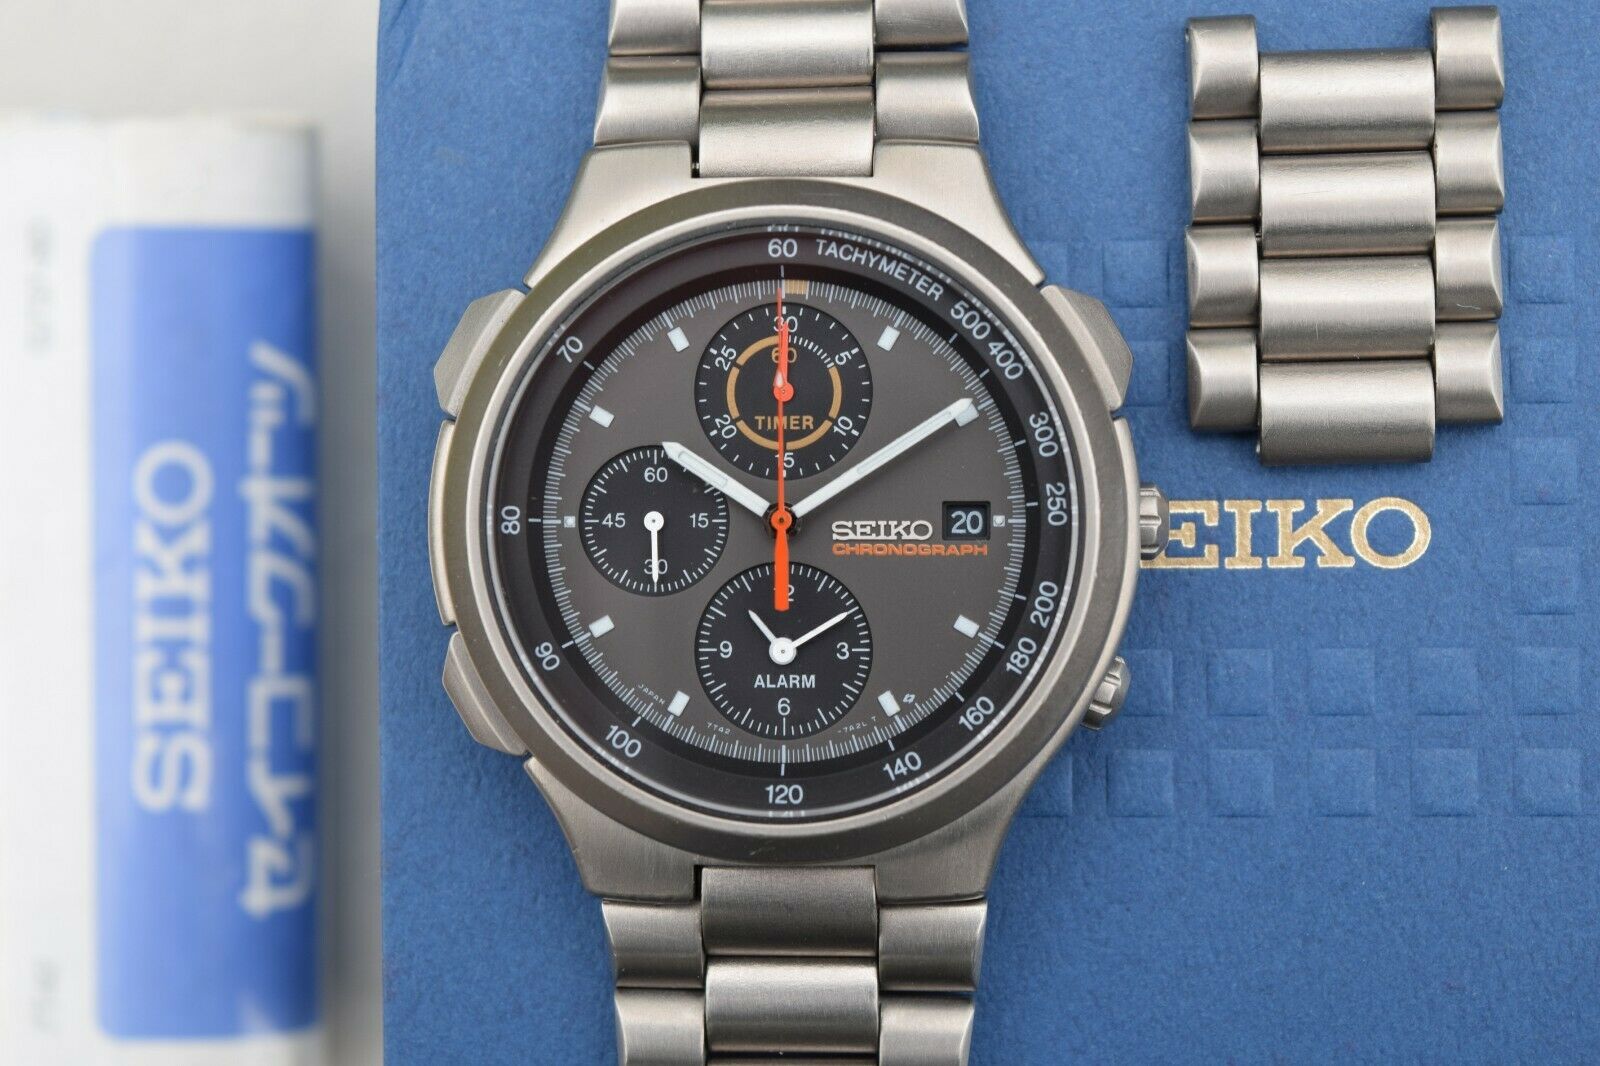 SEIKO スポーツ スピードマスタークロノグラフ SBBR001 7T42 - 腕時計 ...